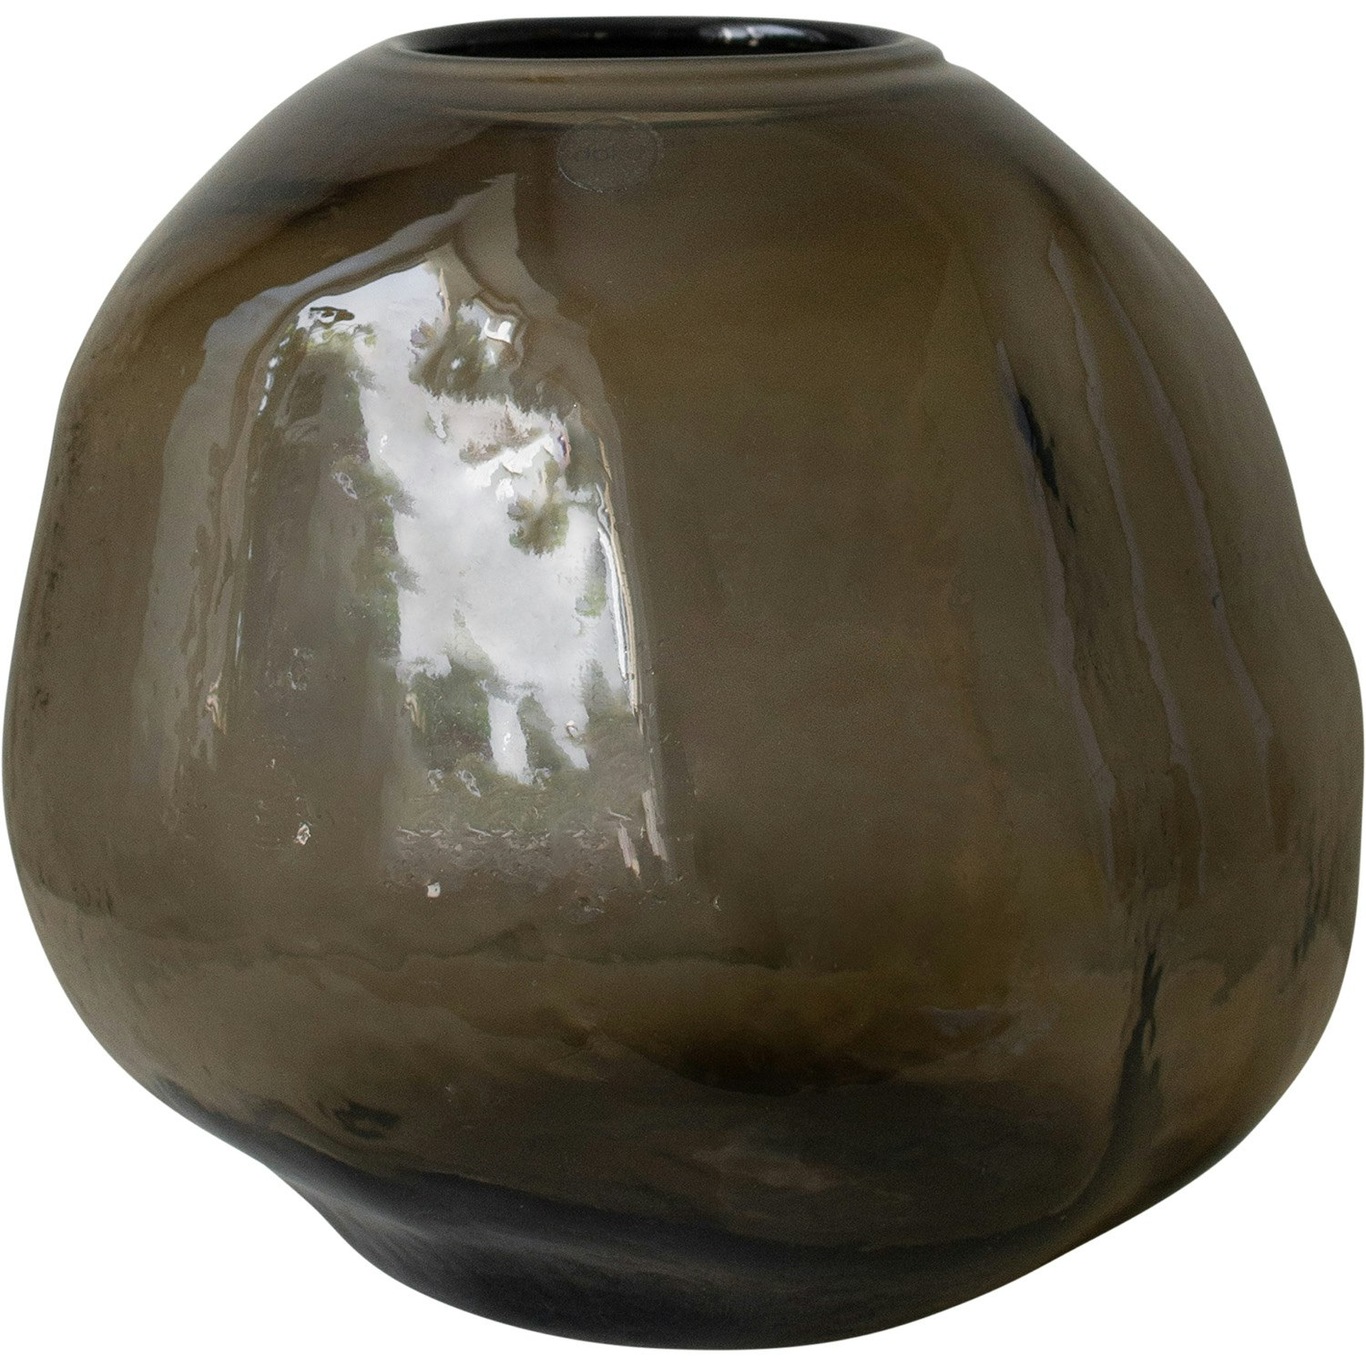 Pebble Vase Brown, Large